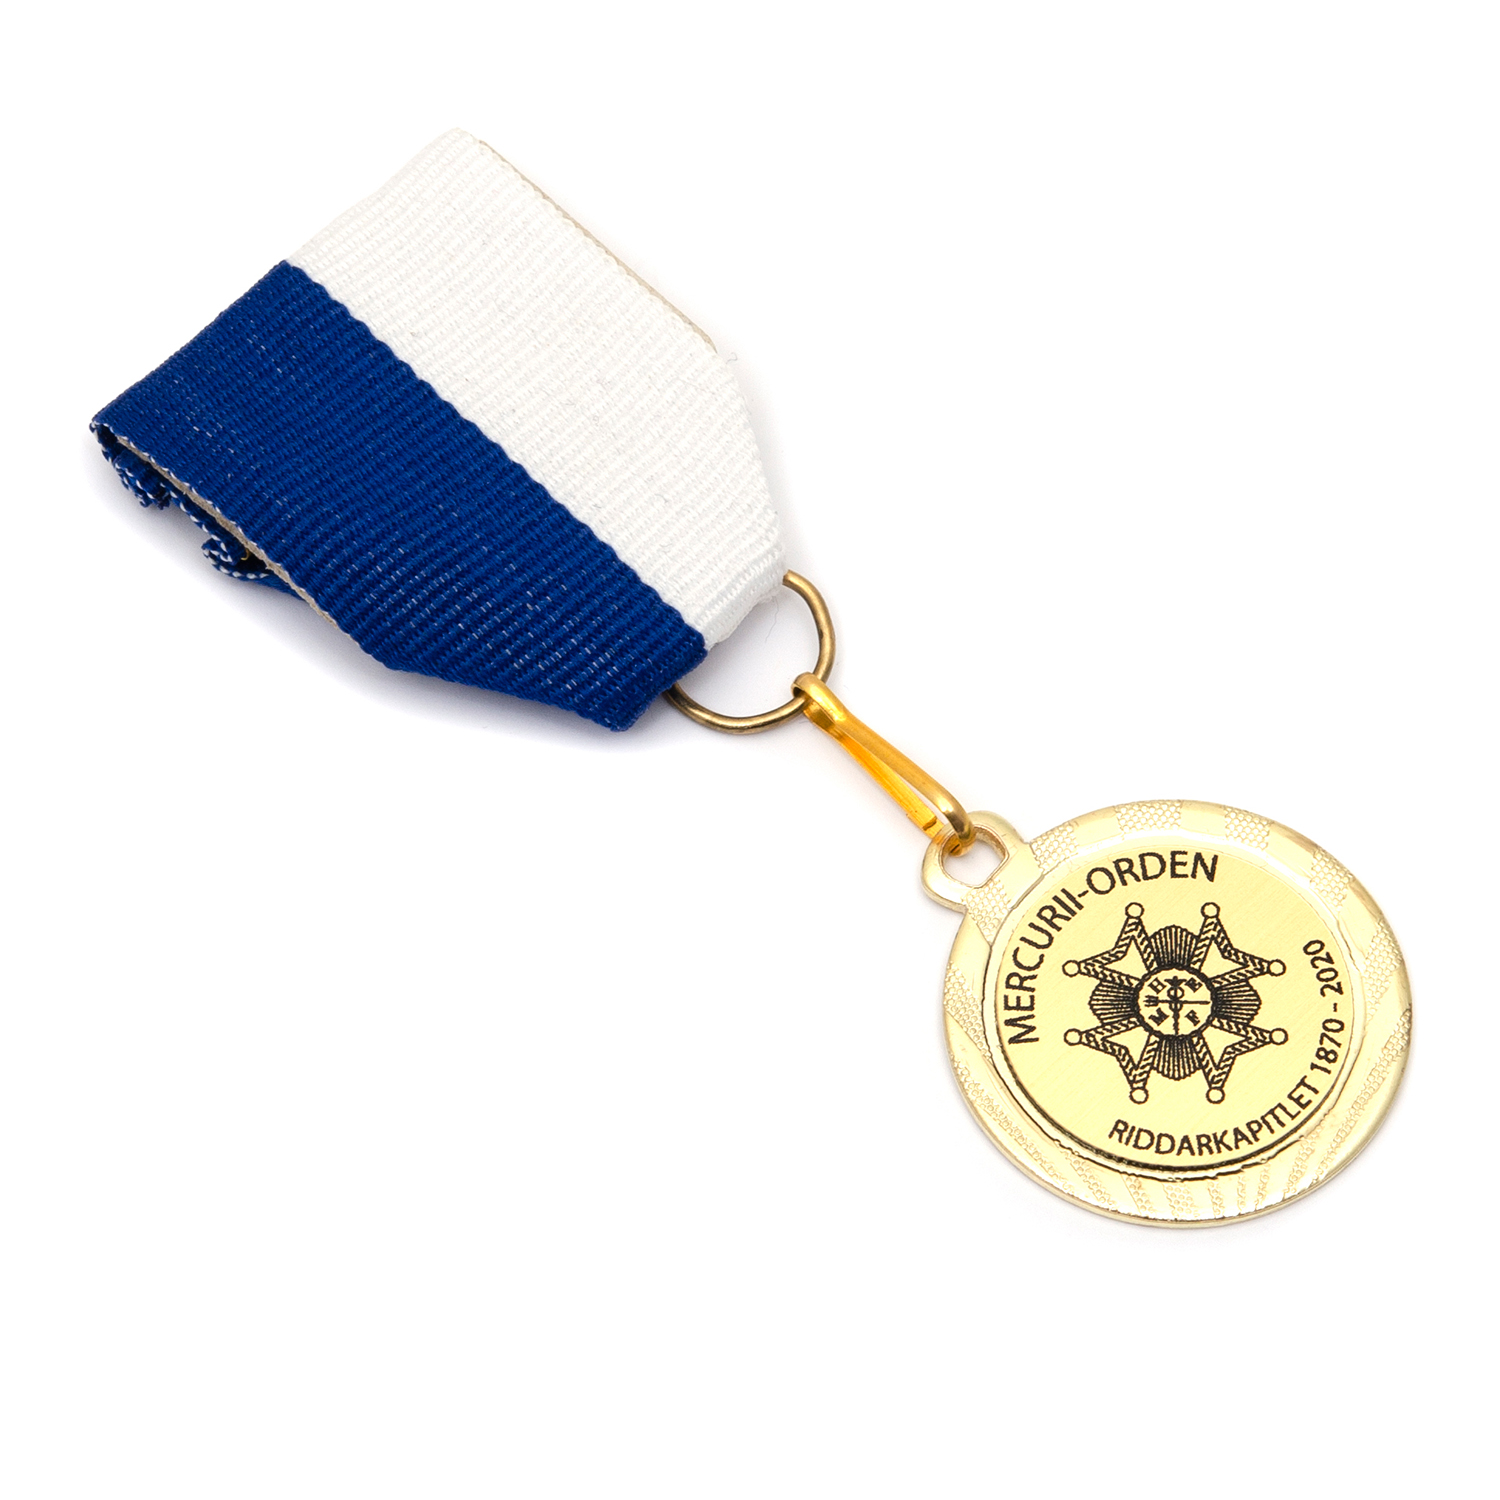 mercuriiorden medalj